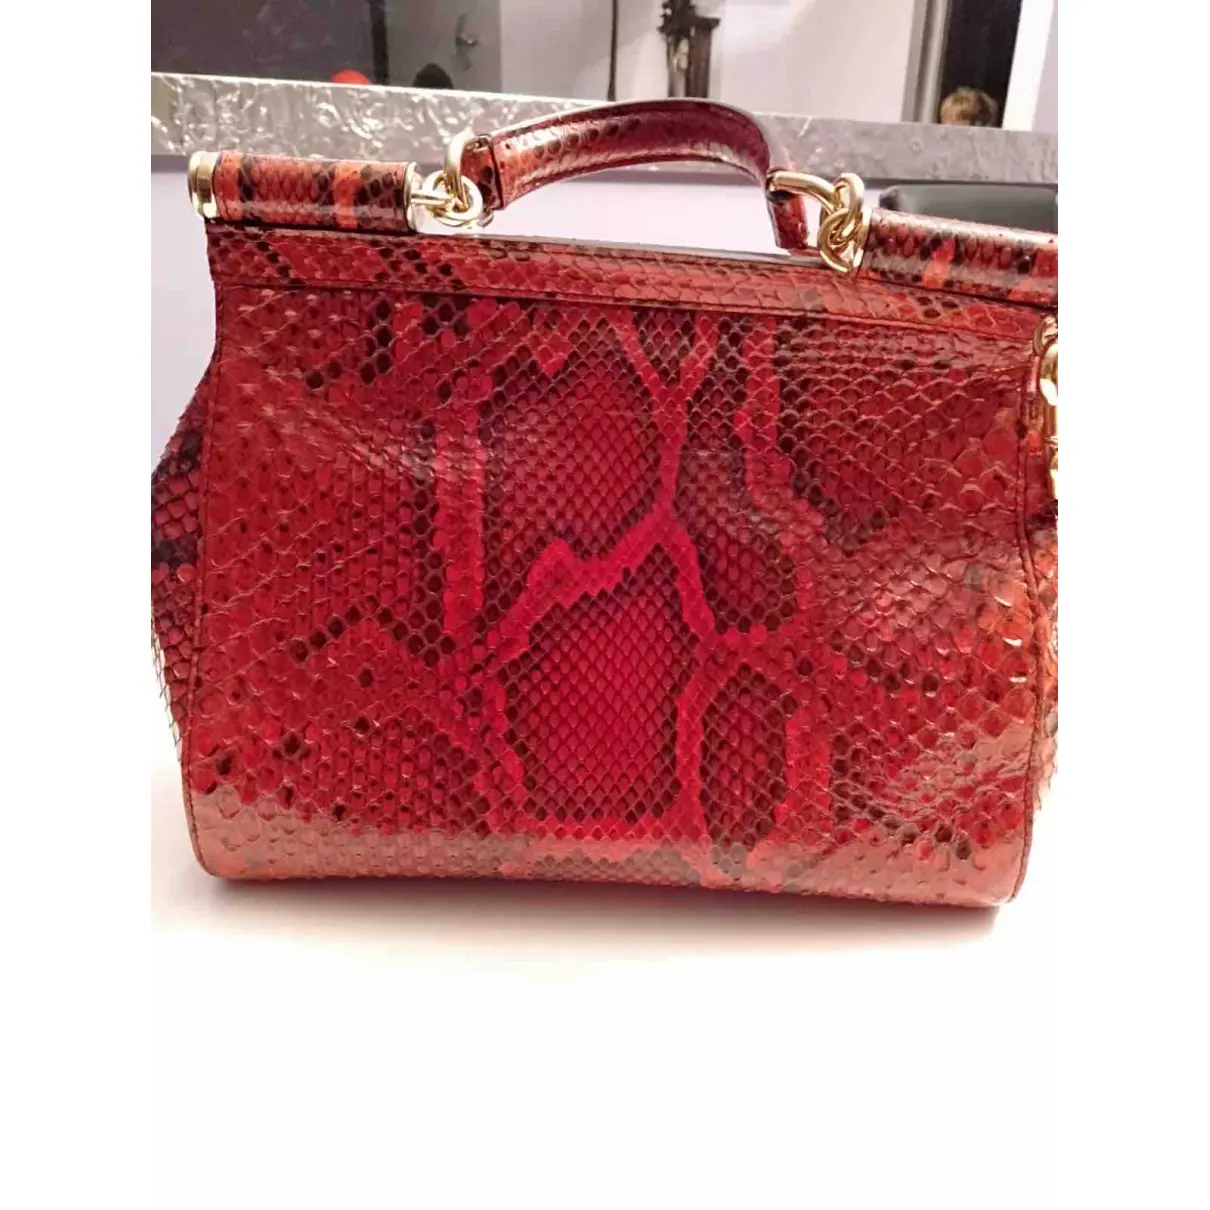 Buy Dolce & Gabbana Sicily python crossbody bag online